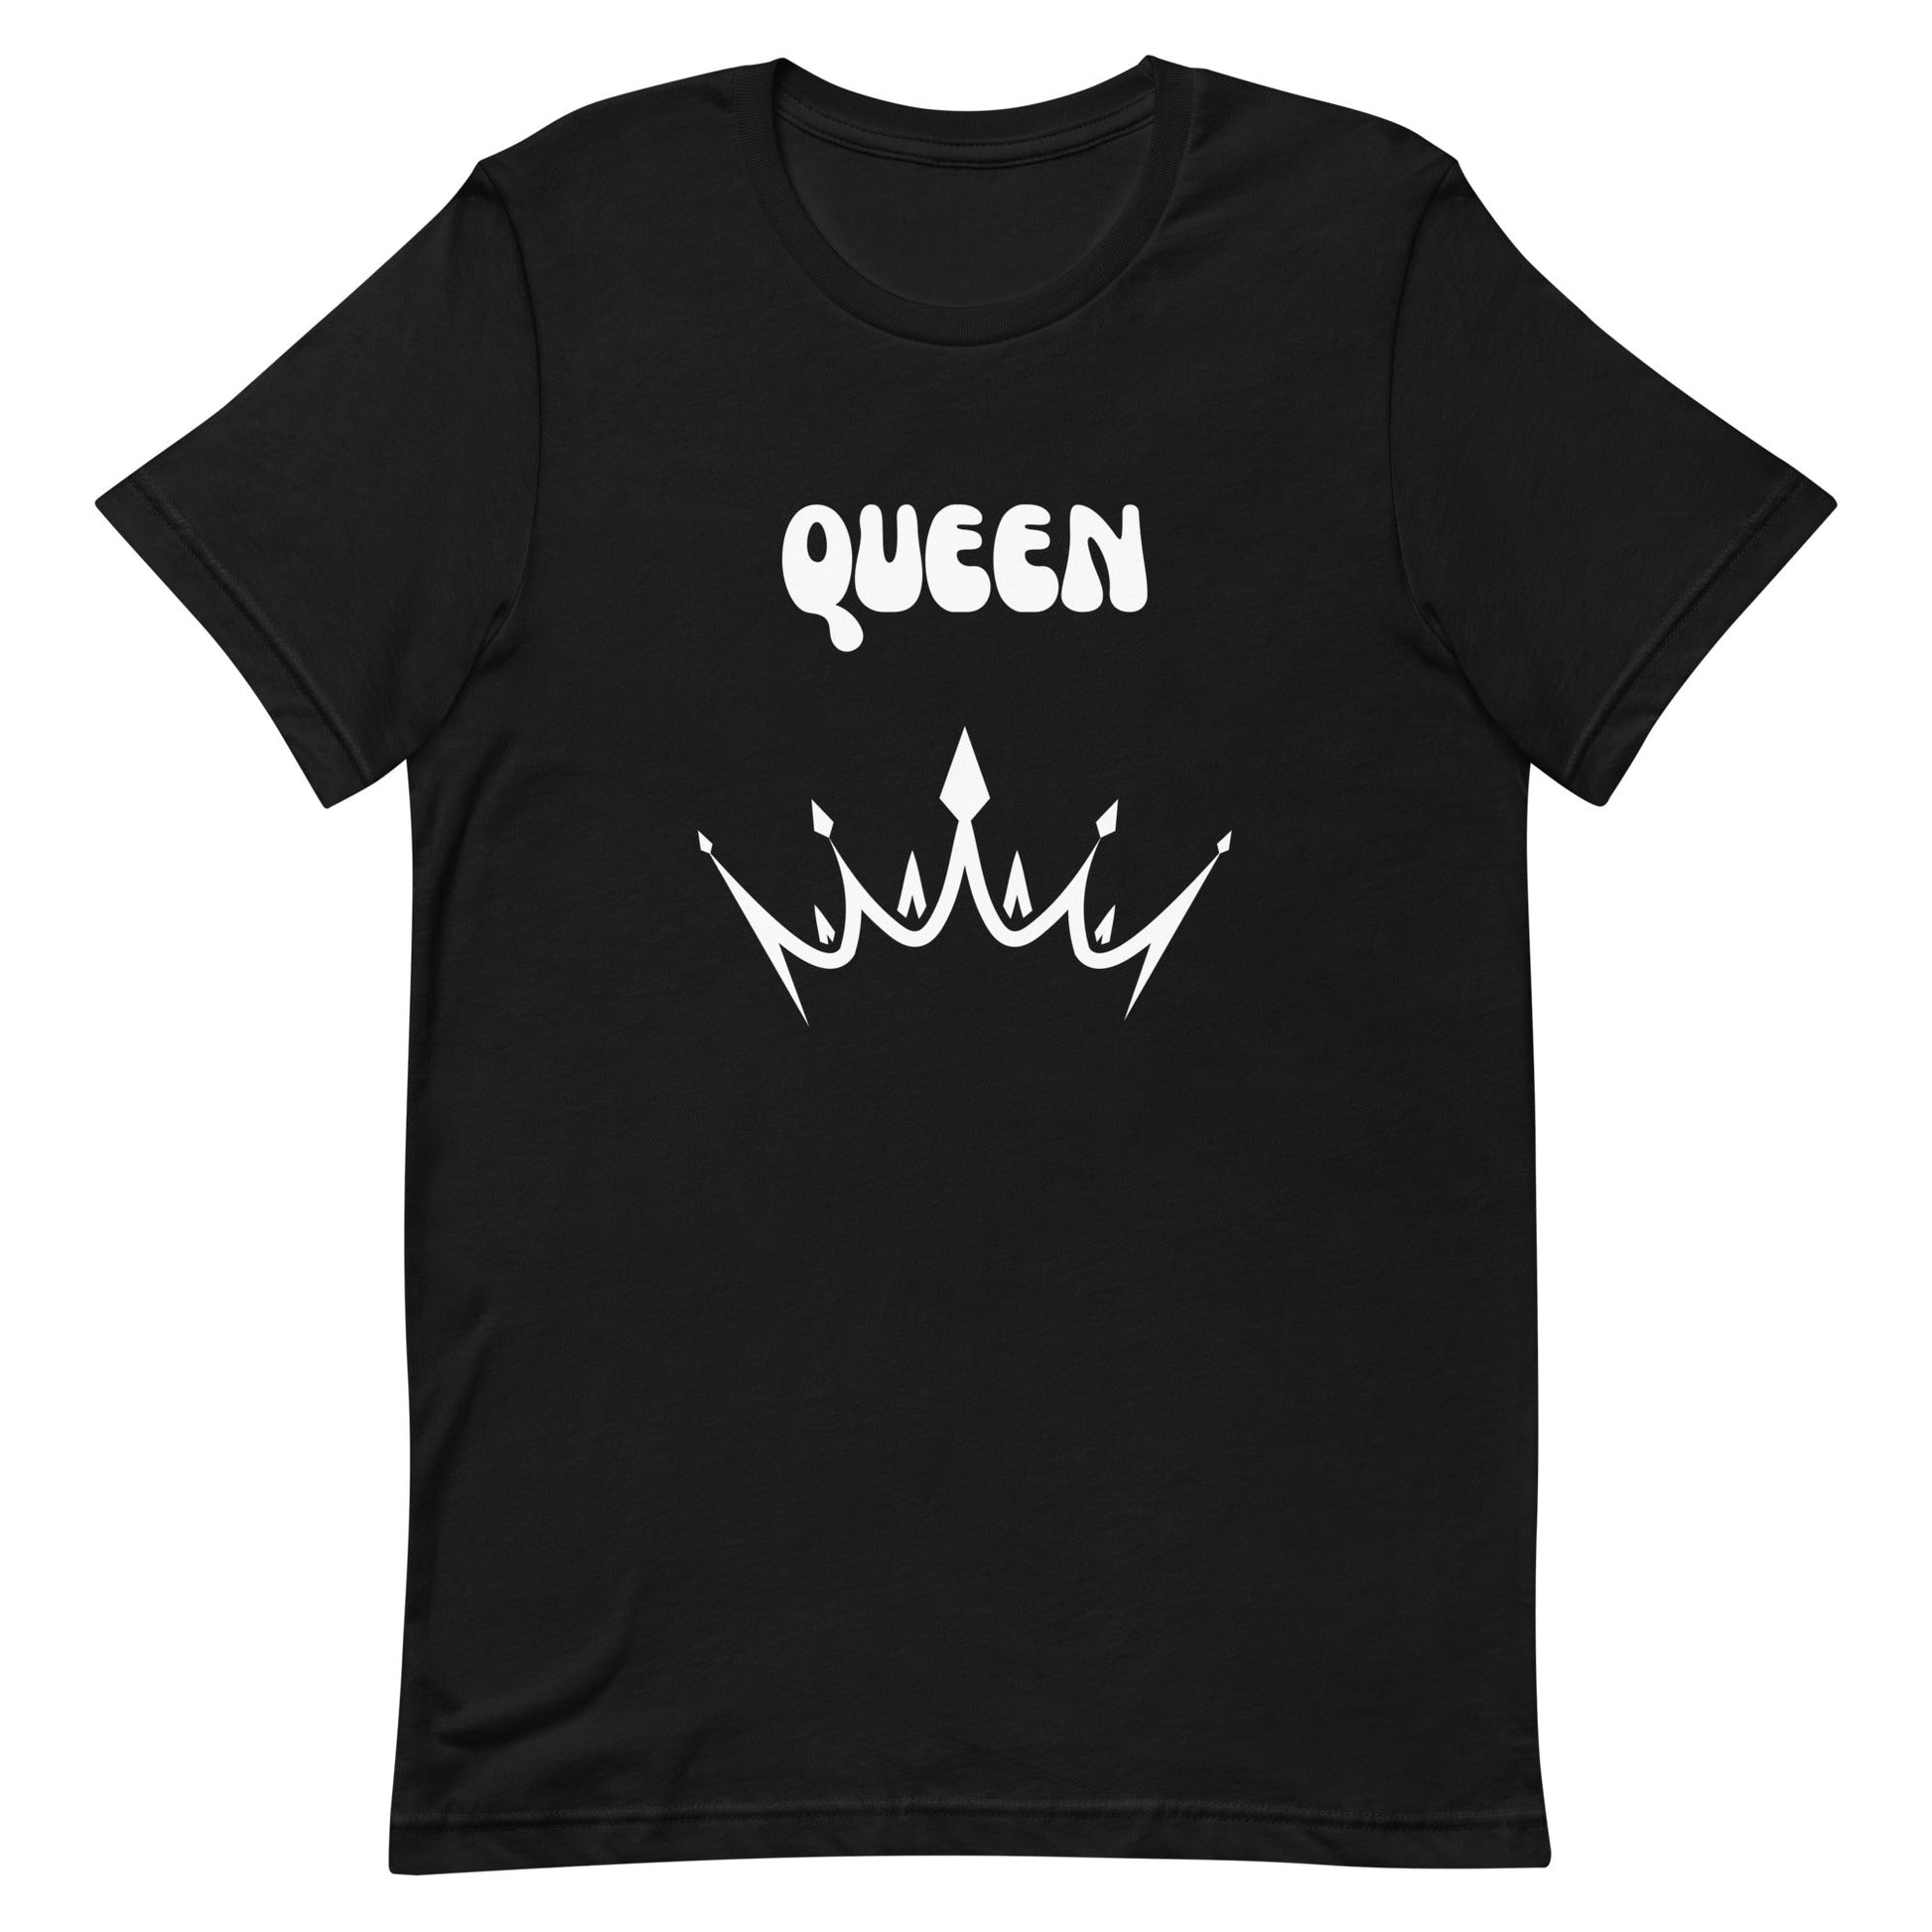 Queen - Unisex t-shirt - lilaloop - T-shirt